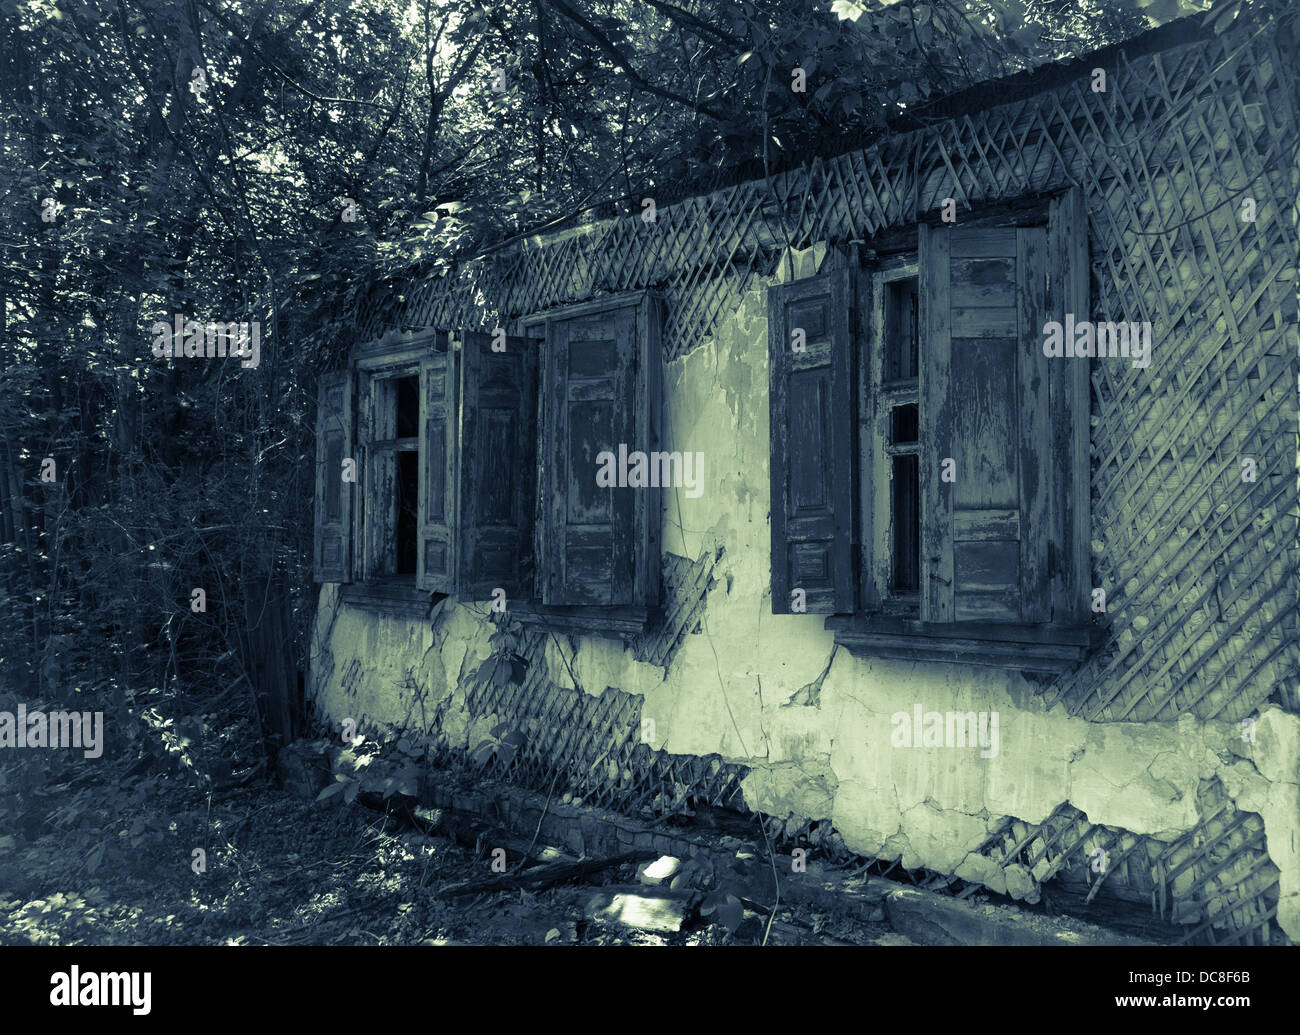 Vecchio abbandonato Haunted House finestra in legno con persiane Foto Stock